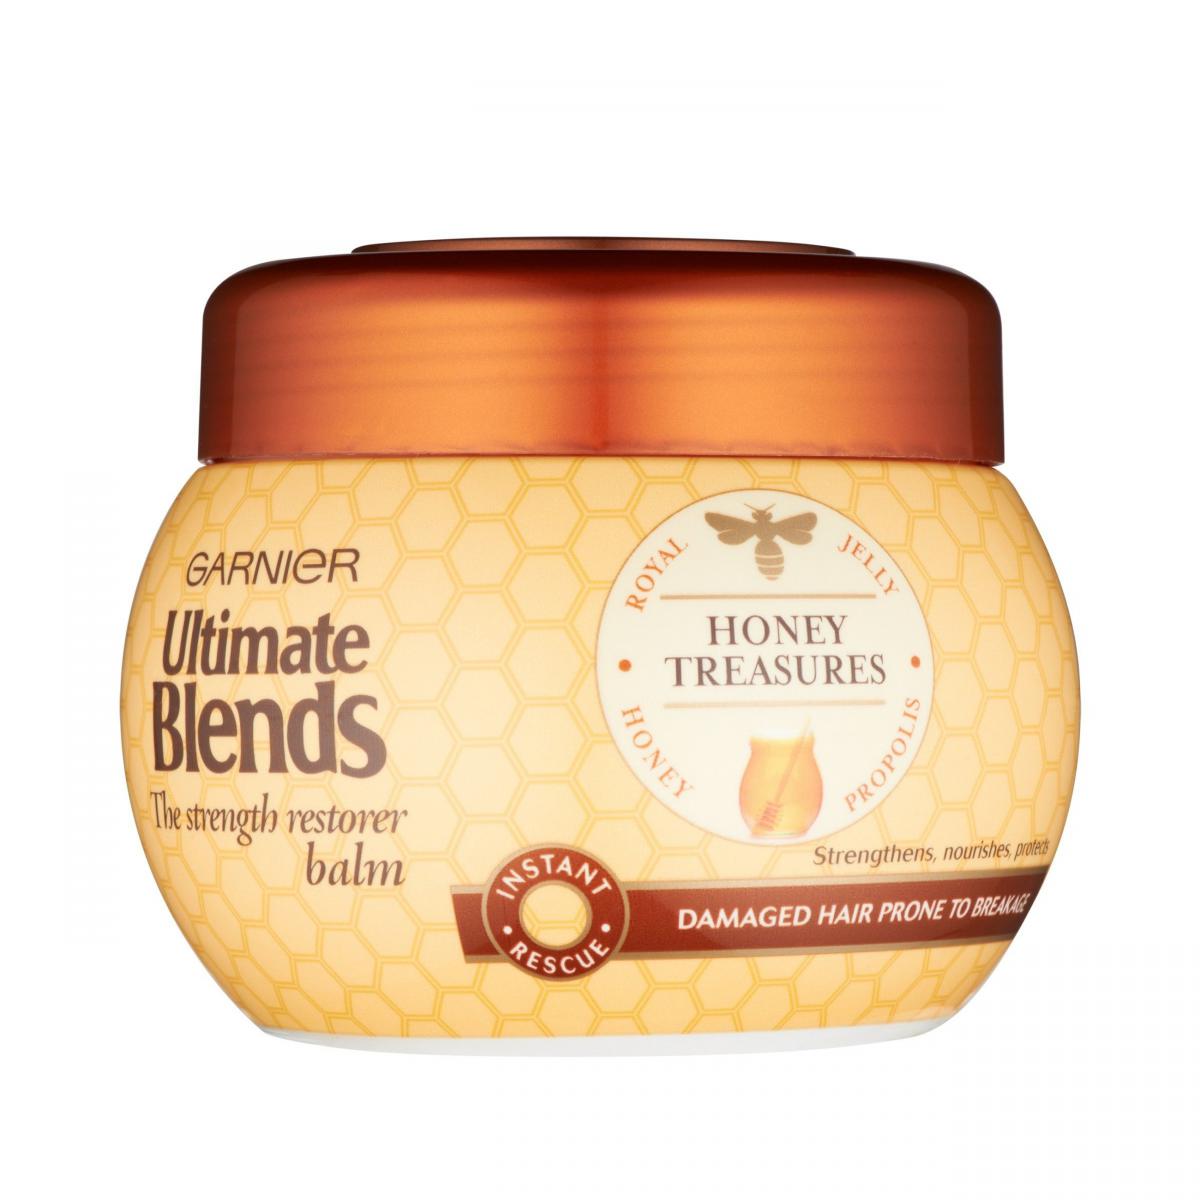 ماسک مو عسل Ultimate blends - Ultimate blends honey treasures